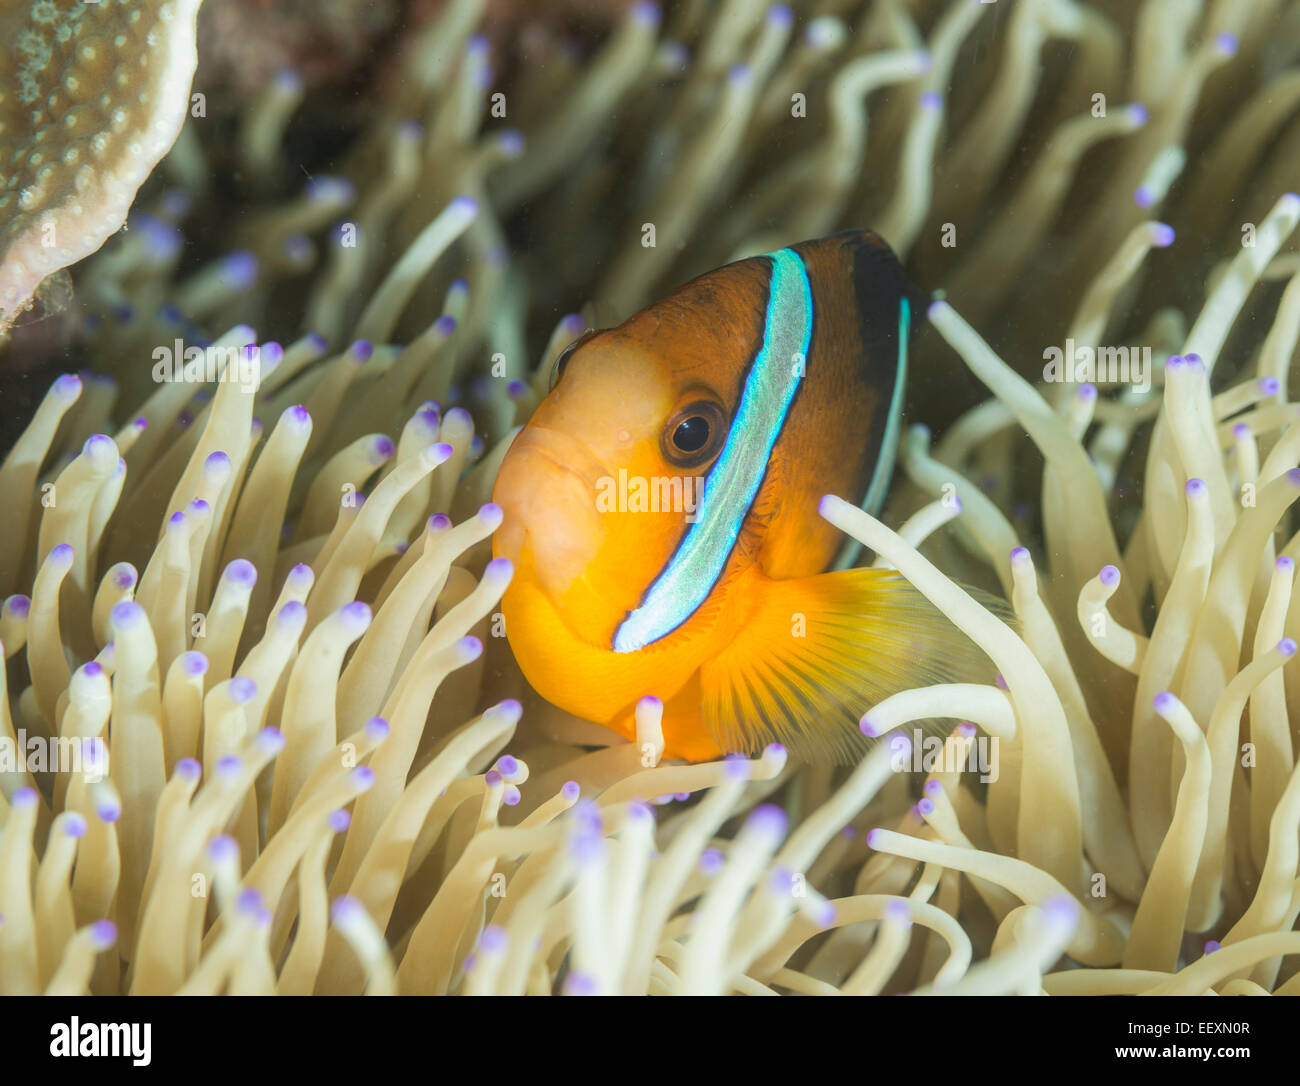 Clarks Anemonenfische in einer anemone Stockfoto